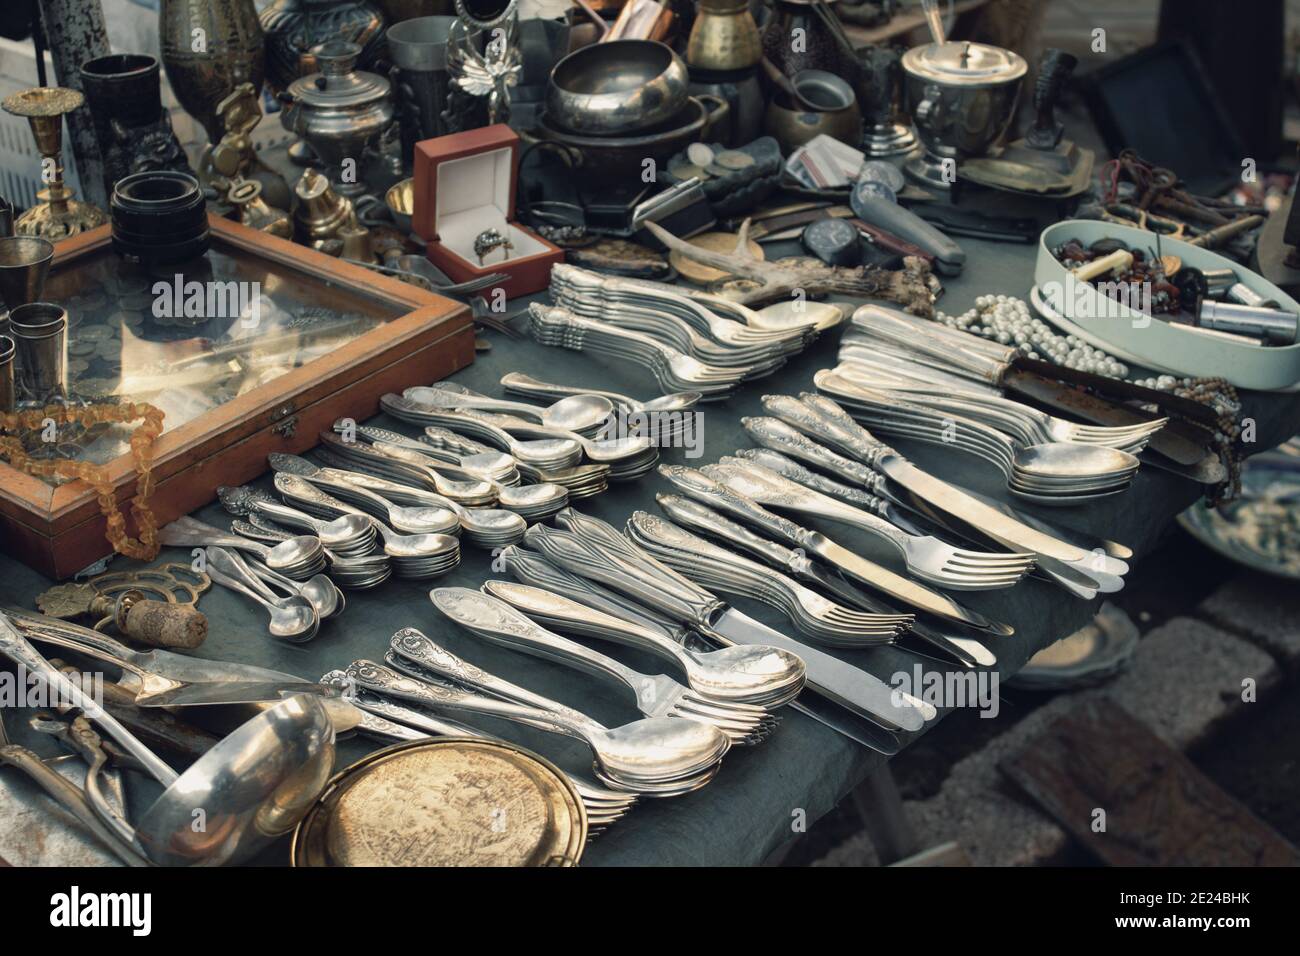 Antiquariato sul mercato delle pulci o festival, vecchia scultura d'argento vintage - cucchiai, coltelli, forchette, e altre cose d'epoca. Oggetti da collezione cimeli e garag Foto Stock